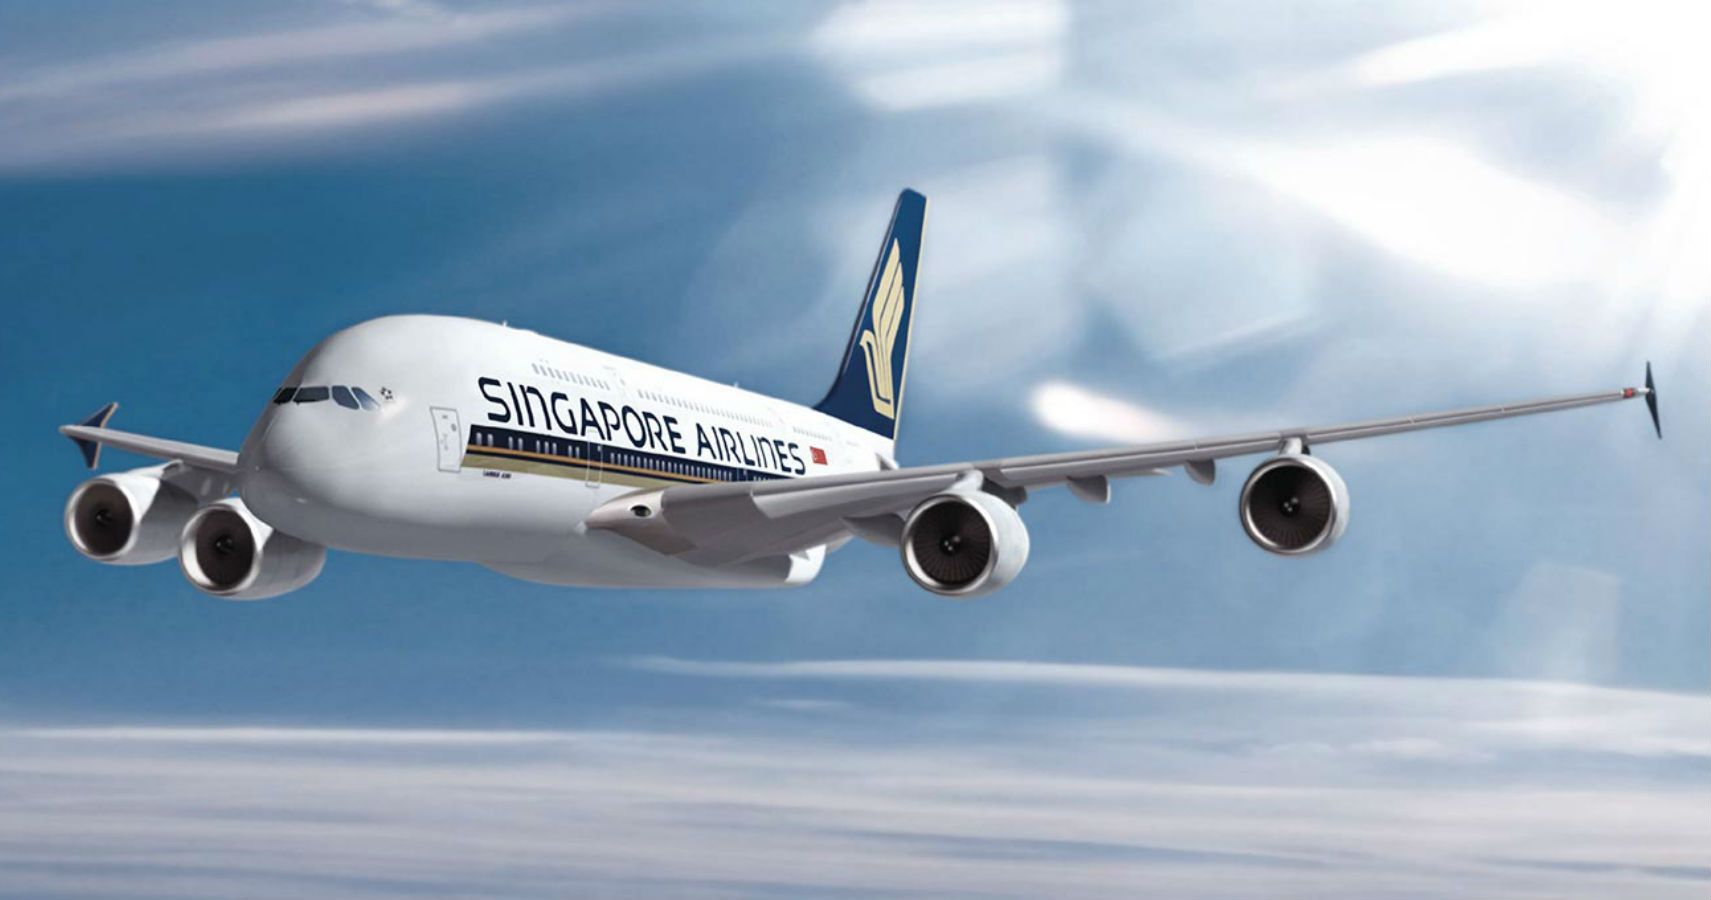 Singapore Airlines reabrira o voo mais longo do mundo pensando